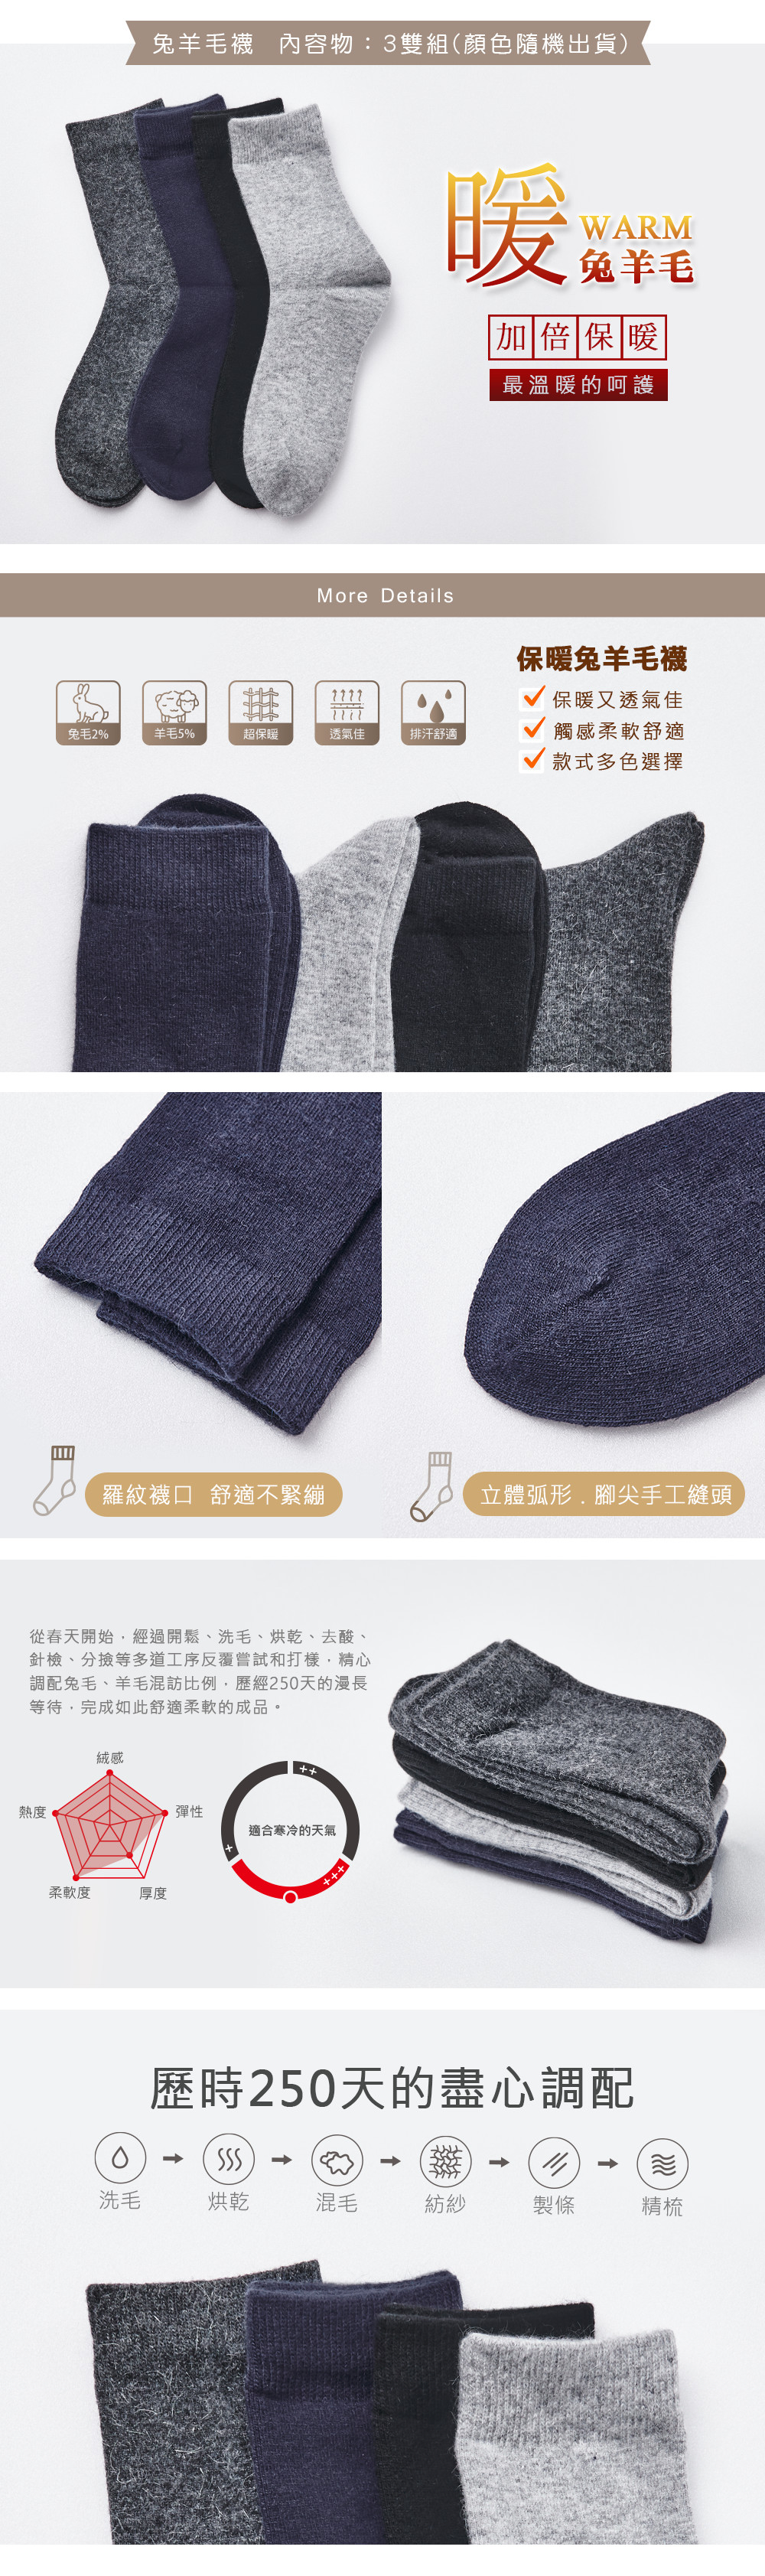 保暖兔羊毛襪(3雙)-193